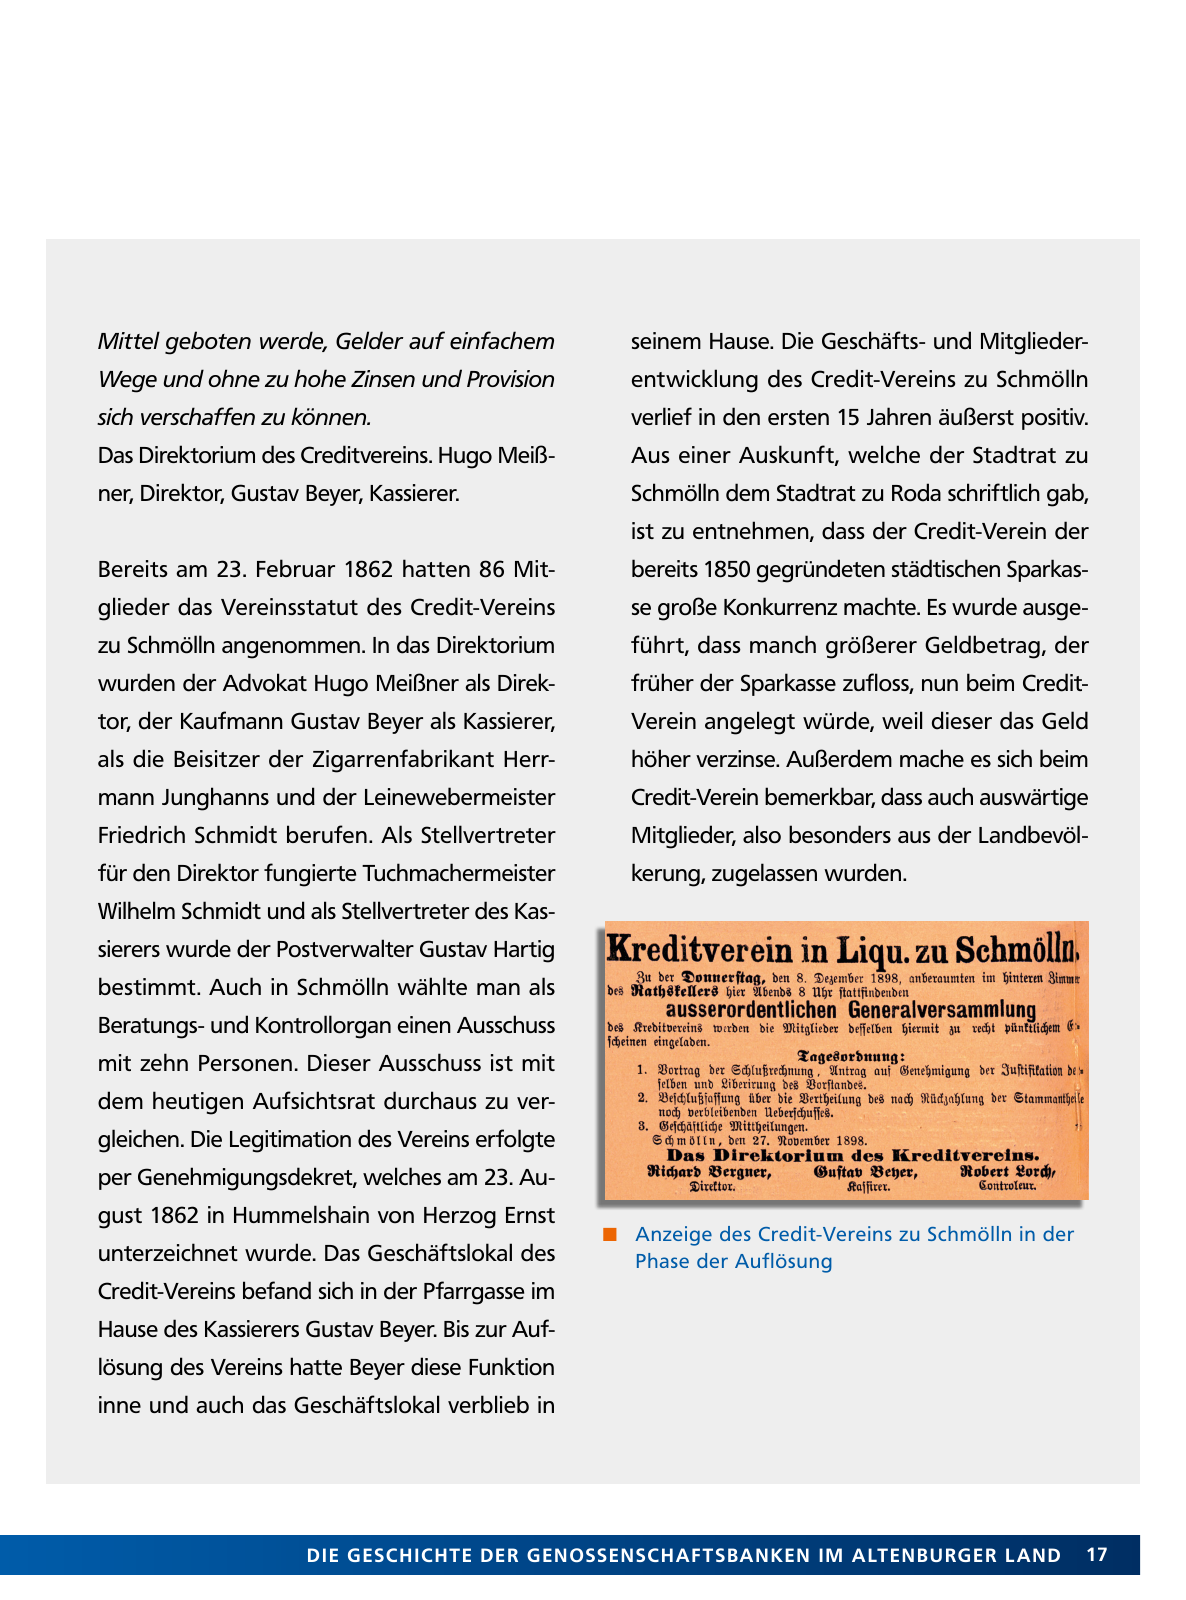 Vorschau Von der Idee, sich selbst zu helfen – 150 Jahre genossenschaftliches Bankwesen im Altenburger Land Seite 17